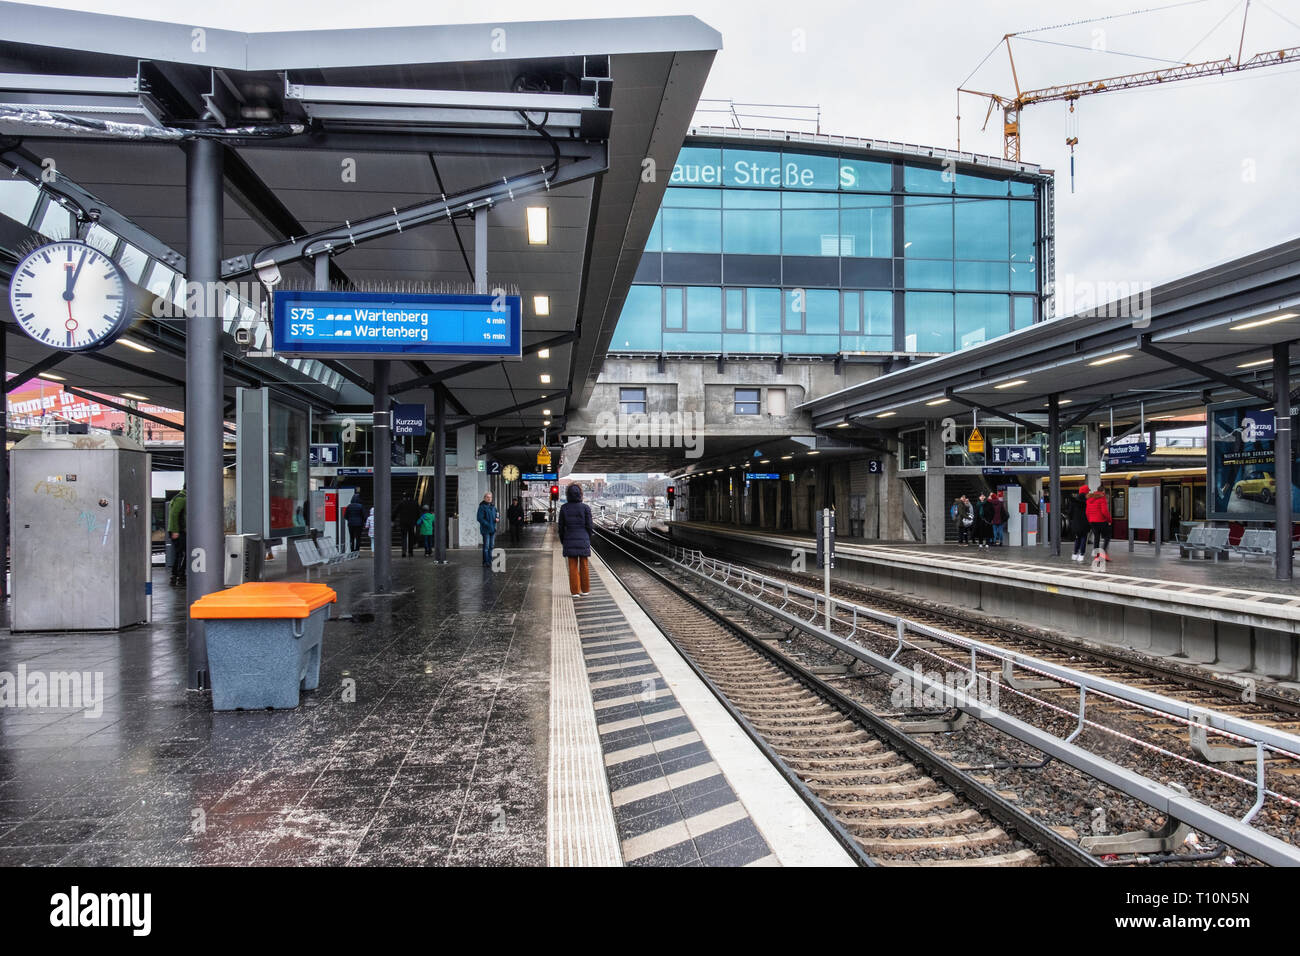 Berlin, Friedrichshain. Warschauer Strasse S-Bahn railway station,Platform and rail tracks Stock Photo